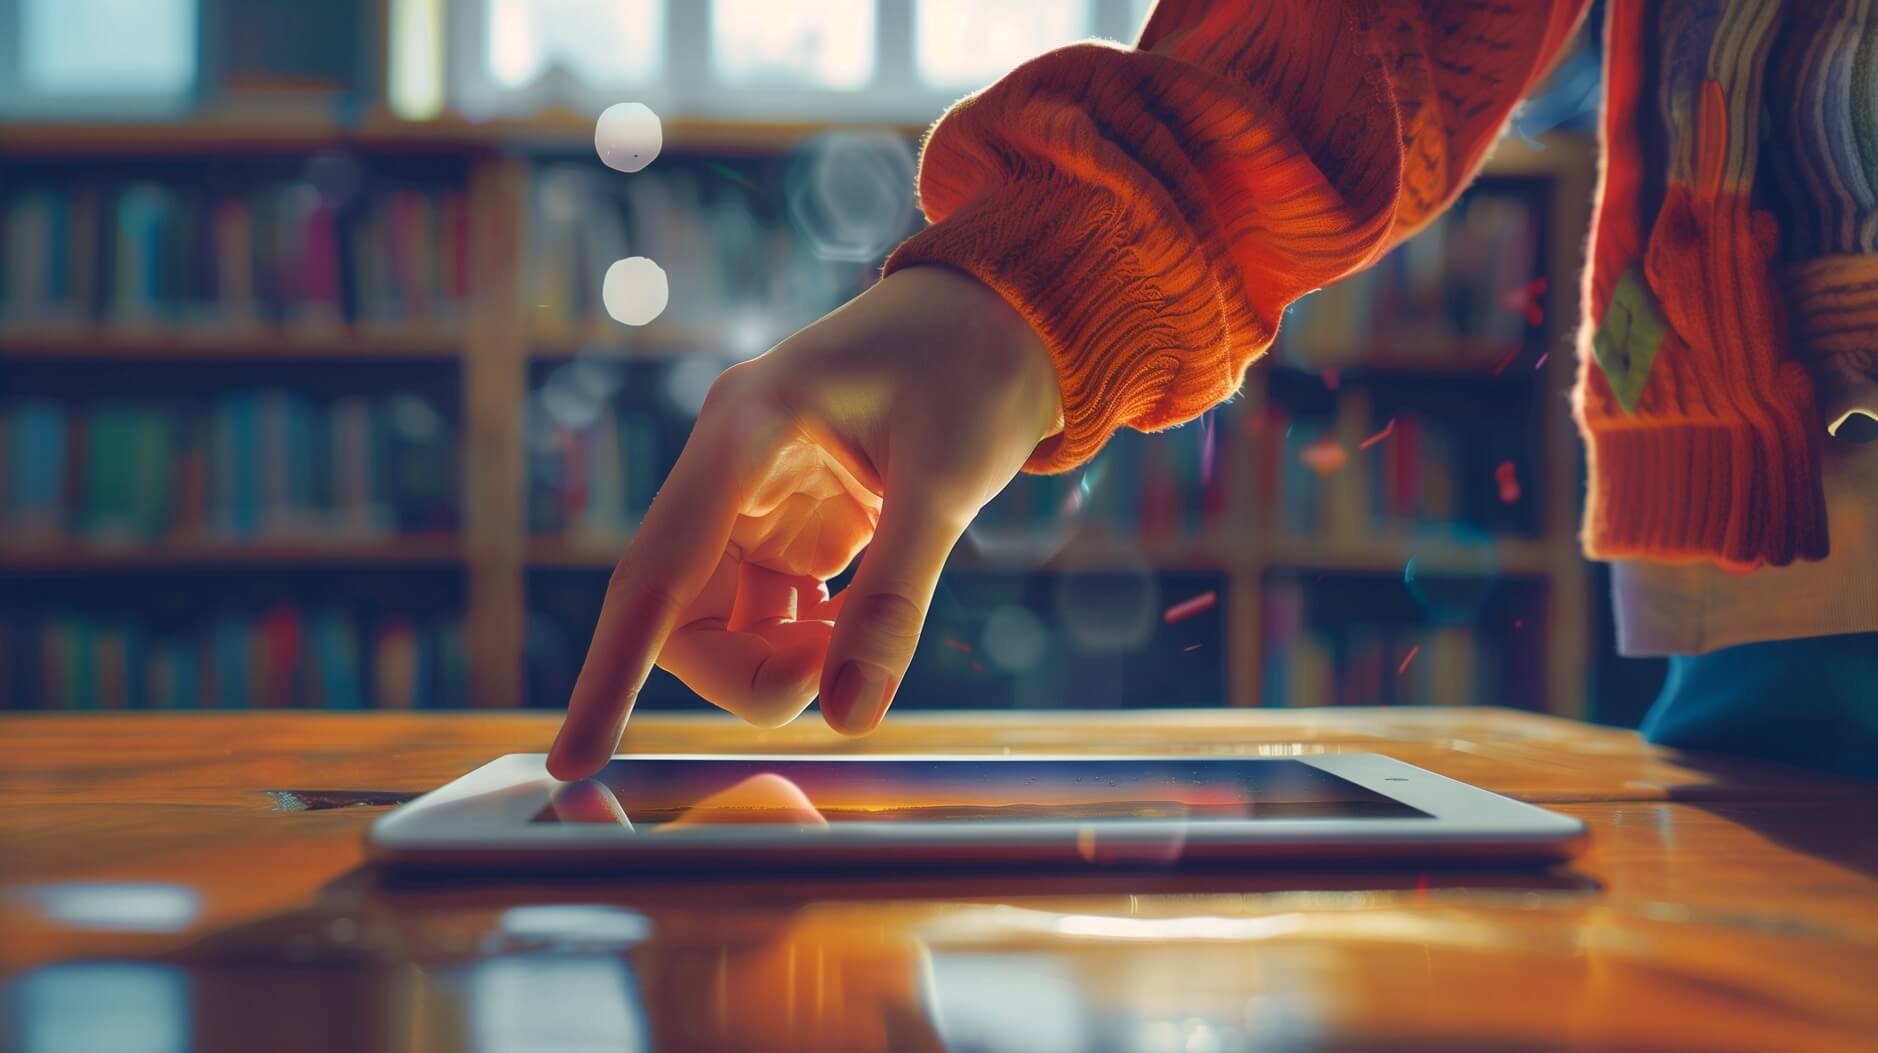 Dieses Bild zeigt eine Hand, die mit einem Tablet-Computer oder einem Touchscreen-Gerät interagiert. Der Hintergrund scheint eine Bibliothek oder ein Bücherregal zu sein, was auf eine akademische oder intellektuelle Umgebung hindeutet.